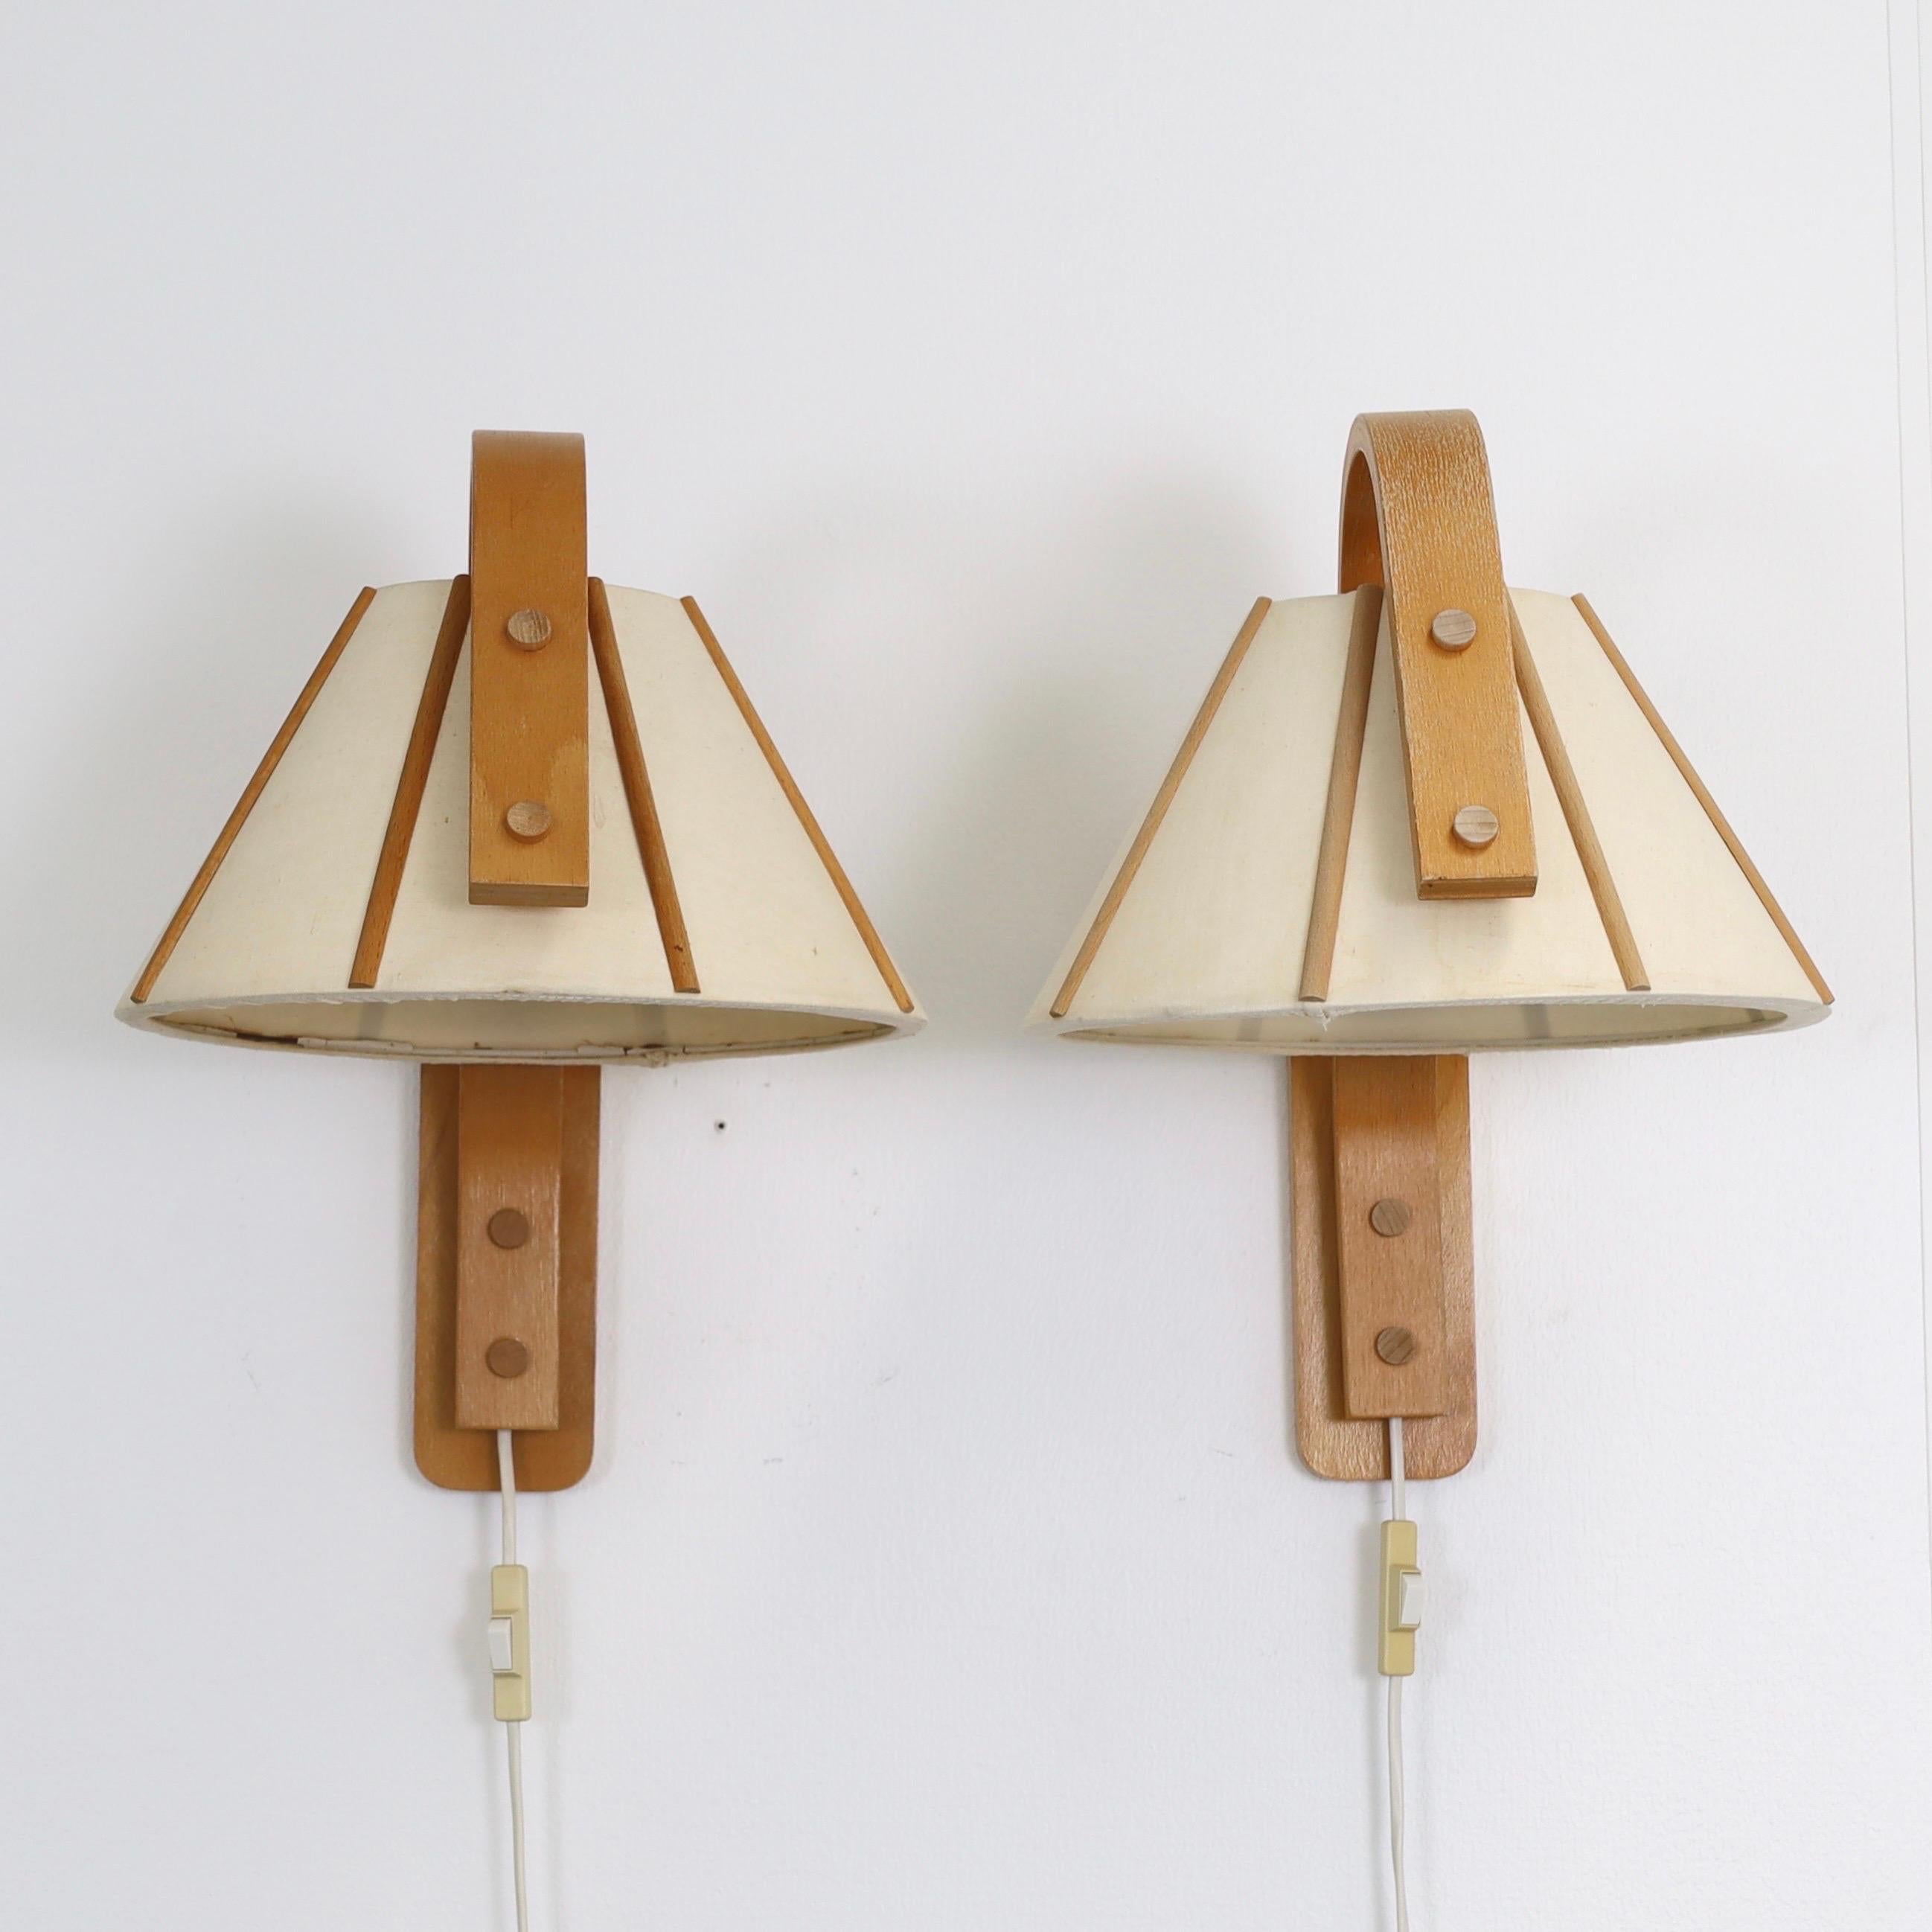 Late 20th Century Set of 4 Scandinavian Modern Beech wood wall lamps by Jan Wickelgren, 1970s For Sale